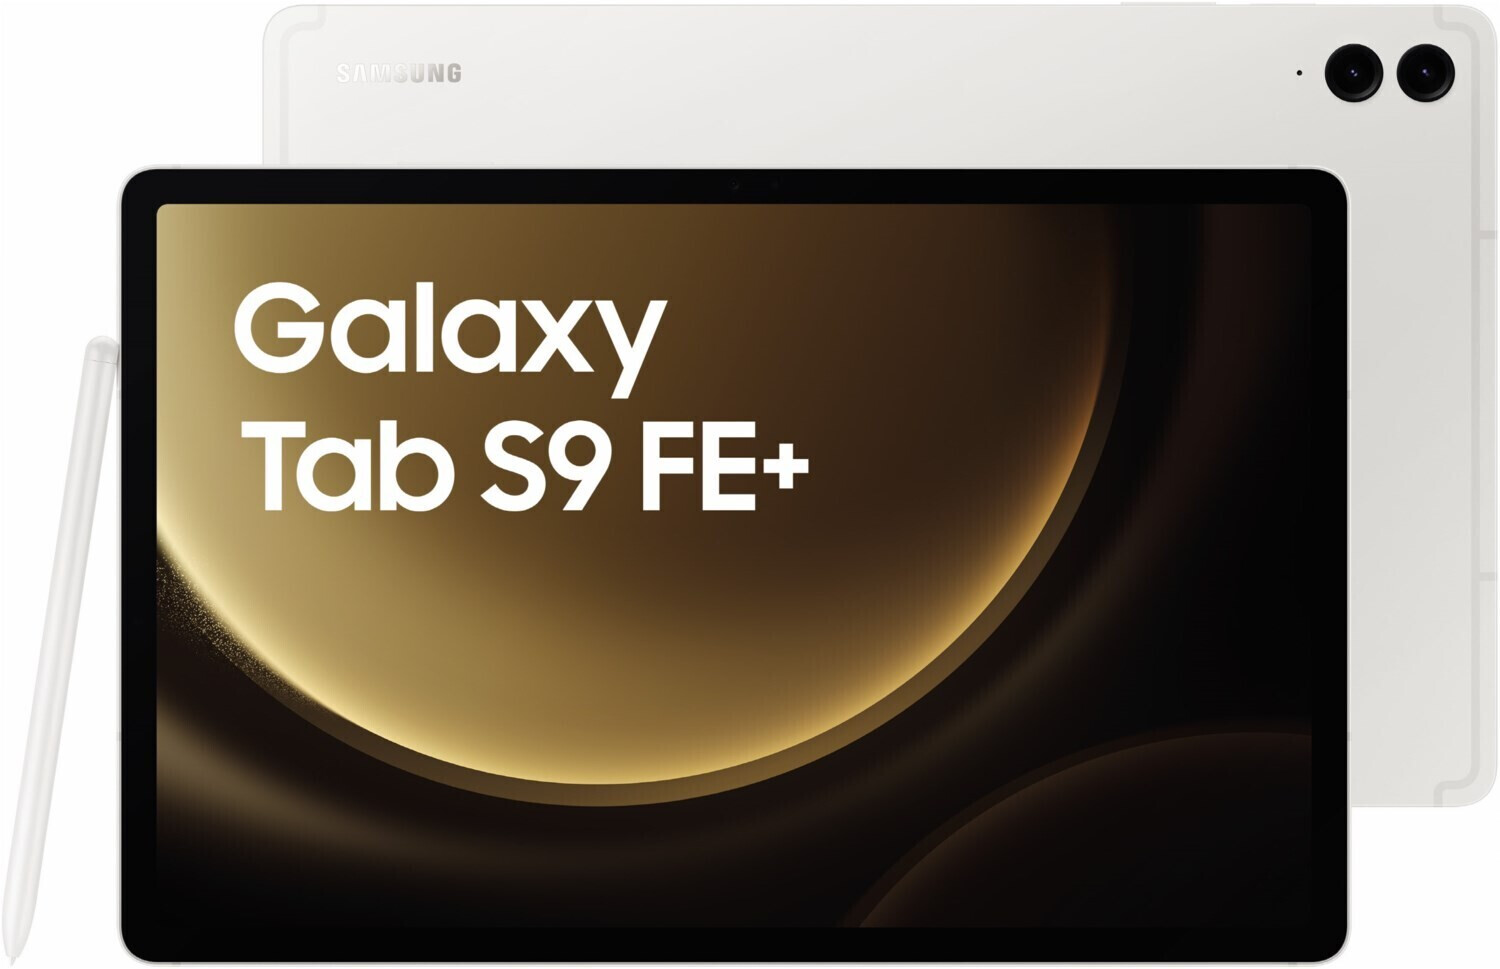 Samsung Galaxy Tab S9 FE+ 128GB WiFi Silver